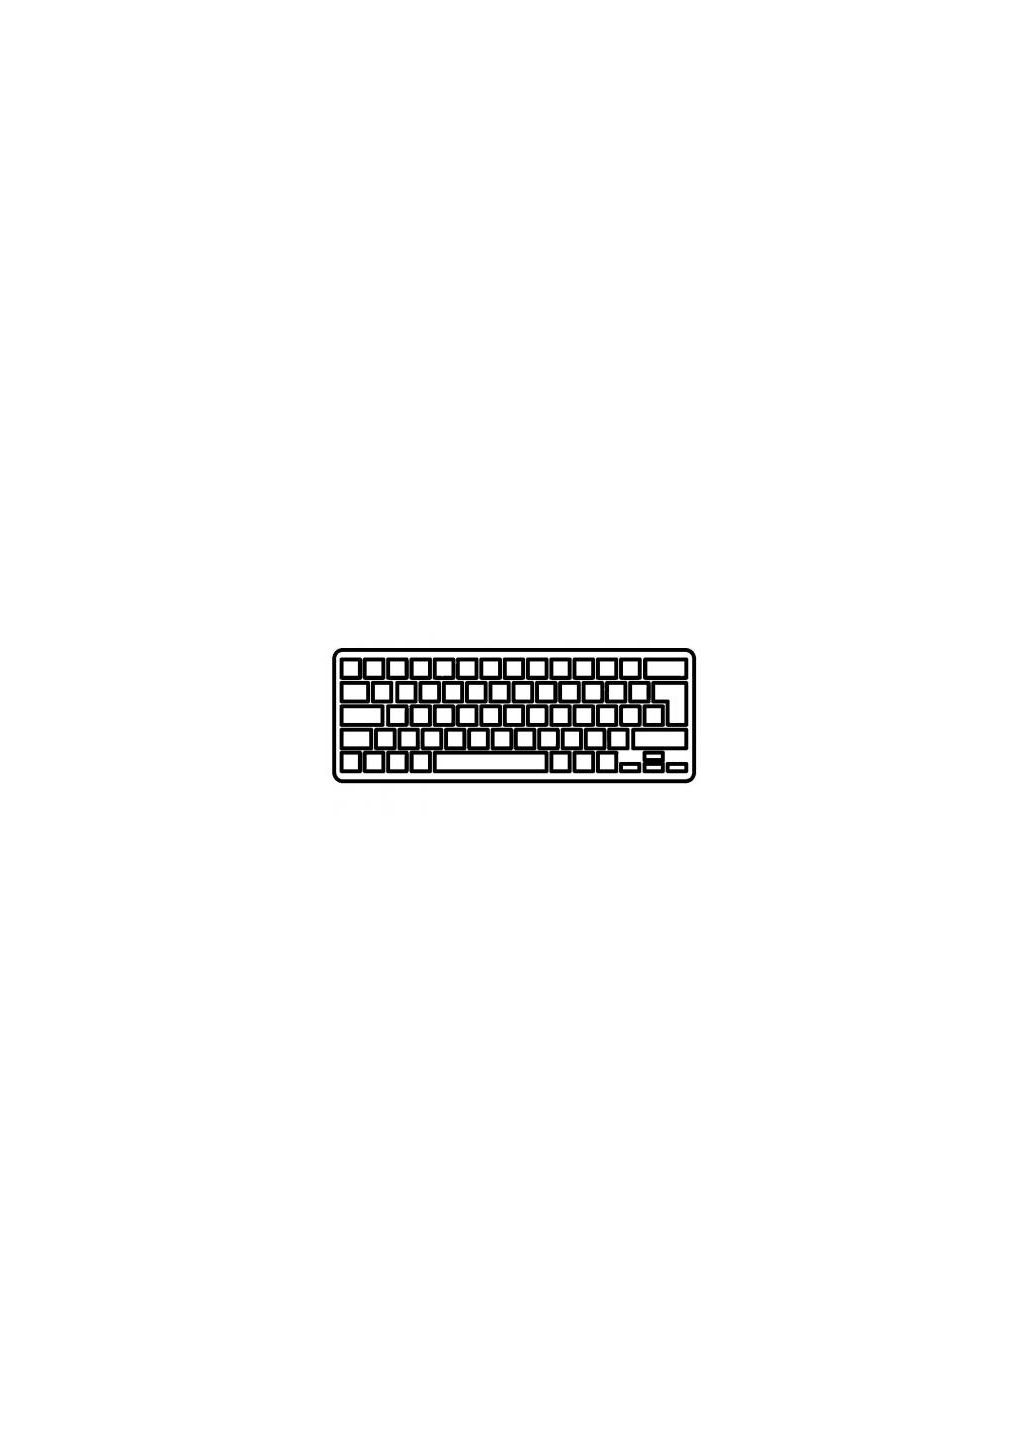 Клавиатура ноутбука ProBook 430 G1 черная без рамки RU (A43849) HP probook 430 g1 черная без рамки ua (276707677)